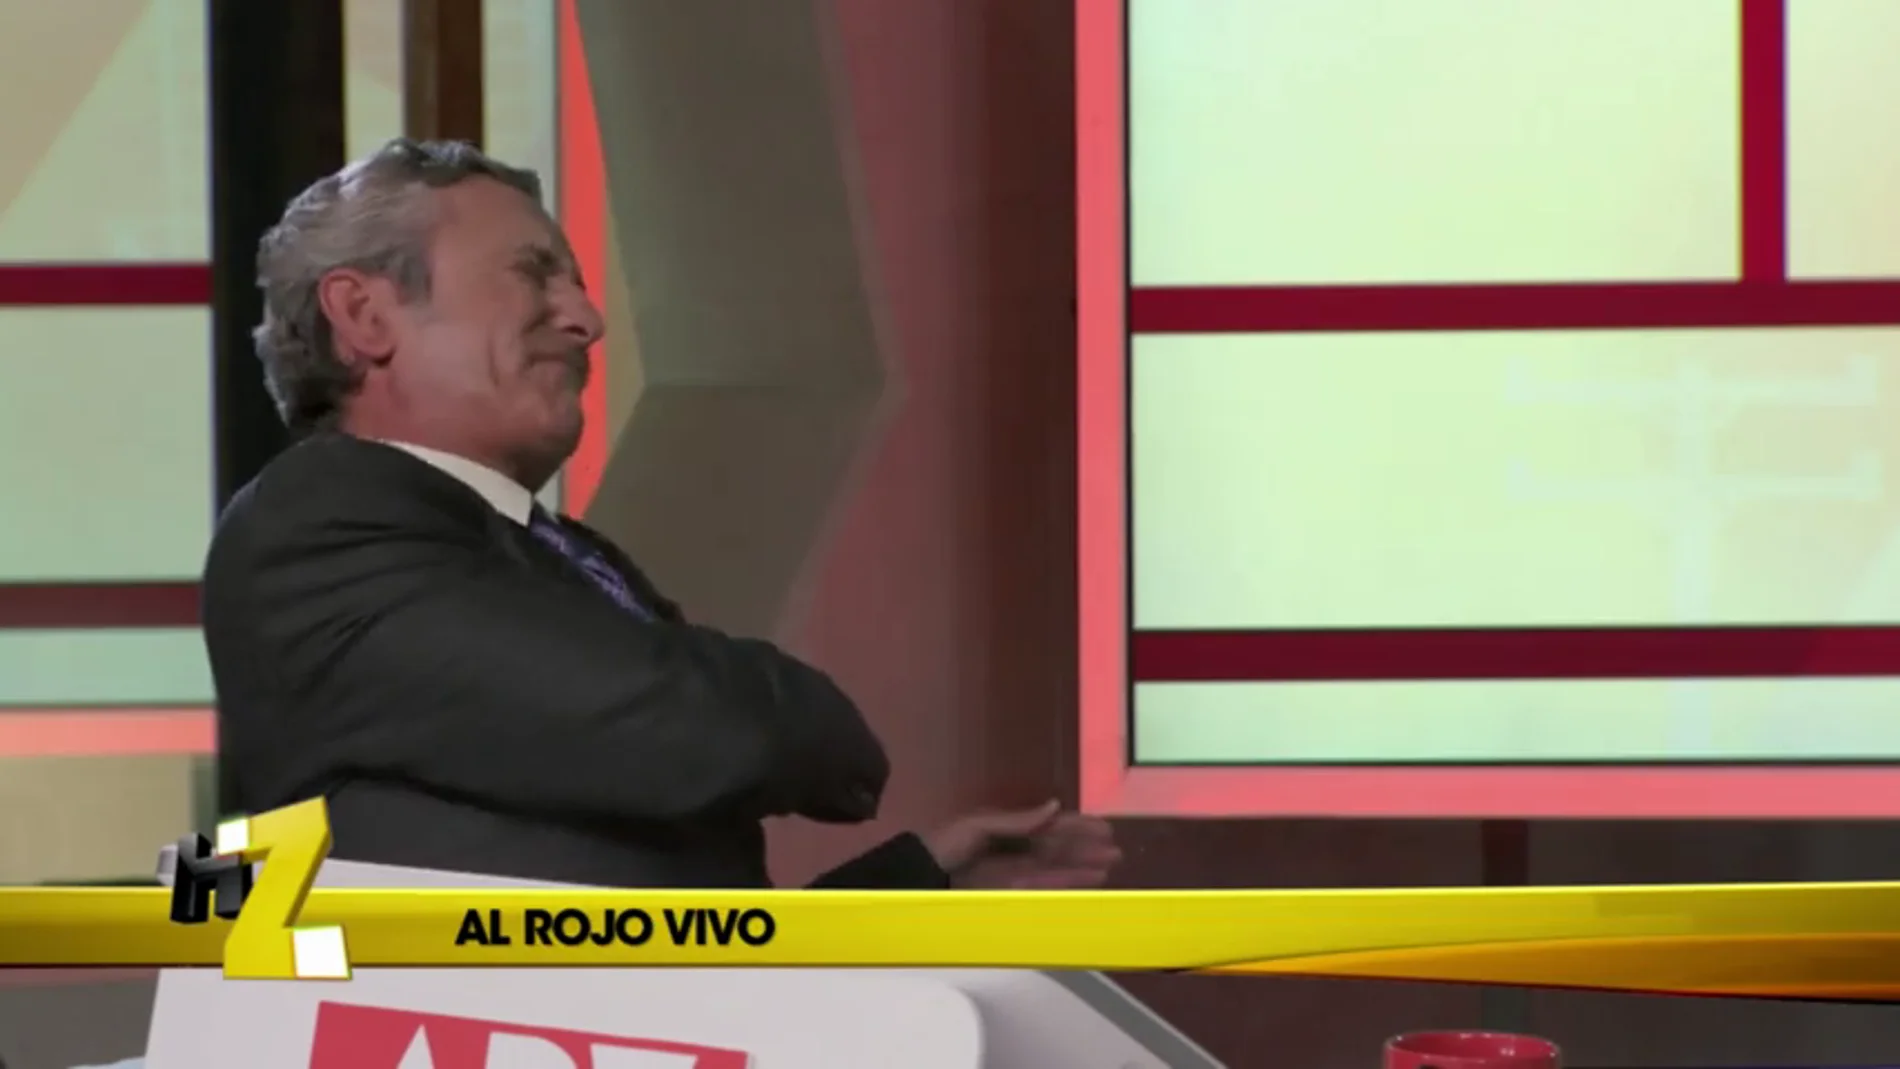 Frame 108.439312 de: Eduardo Inda sufre un infarto en 'Al Rojo vivo'